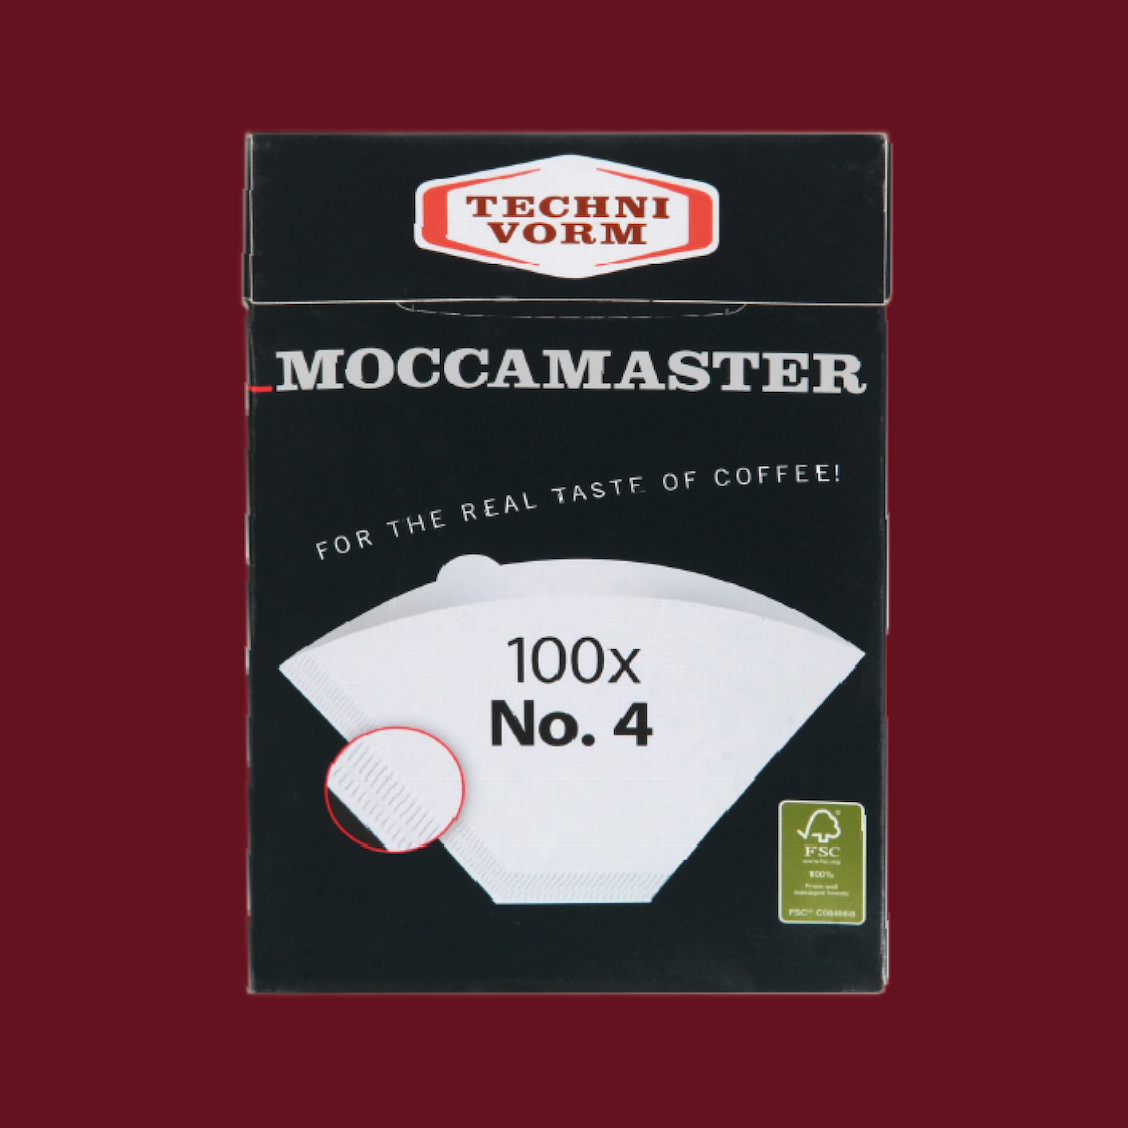 Moccamaster filterpapier nr. 4 - 100 stuks